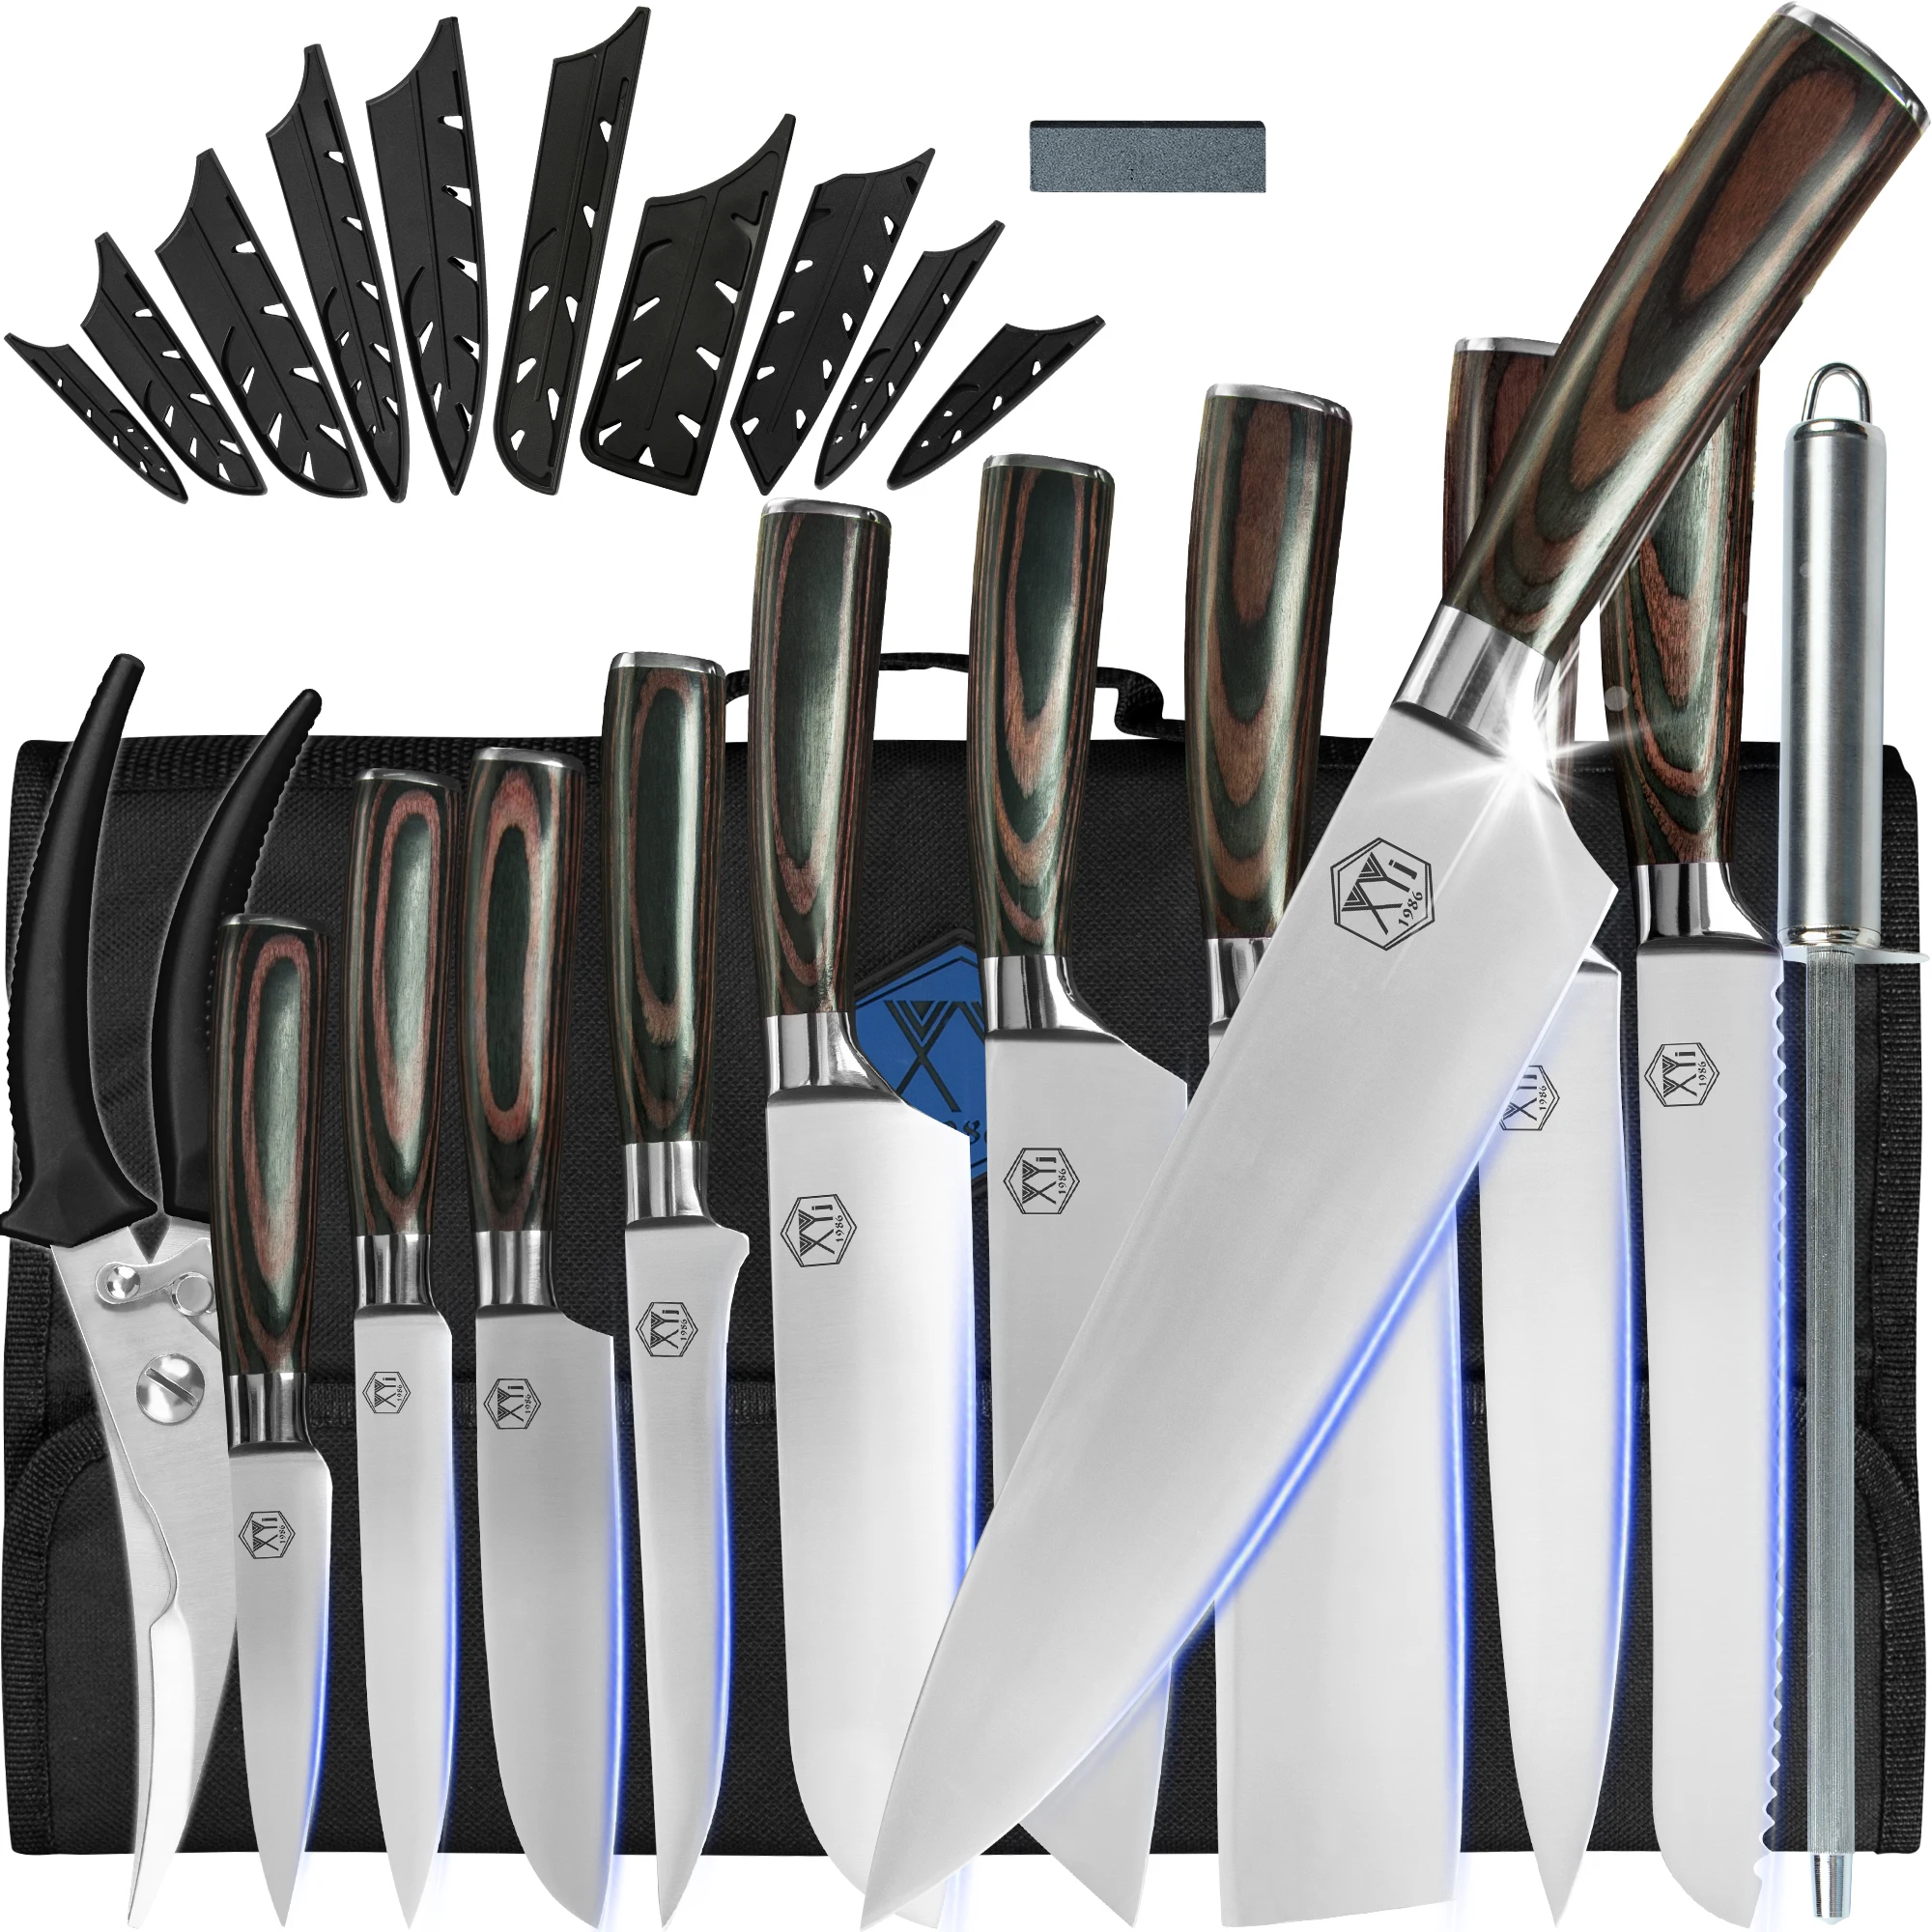 

Набор кухонных ножей XYj, профессиональный набор из 10 предметов с рулонным мешком, из нержавеющей стали, для шеф-повара, заточки ножниц, подарочная упаковка